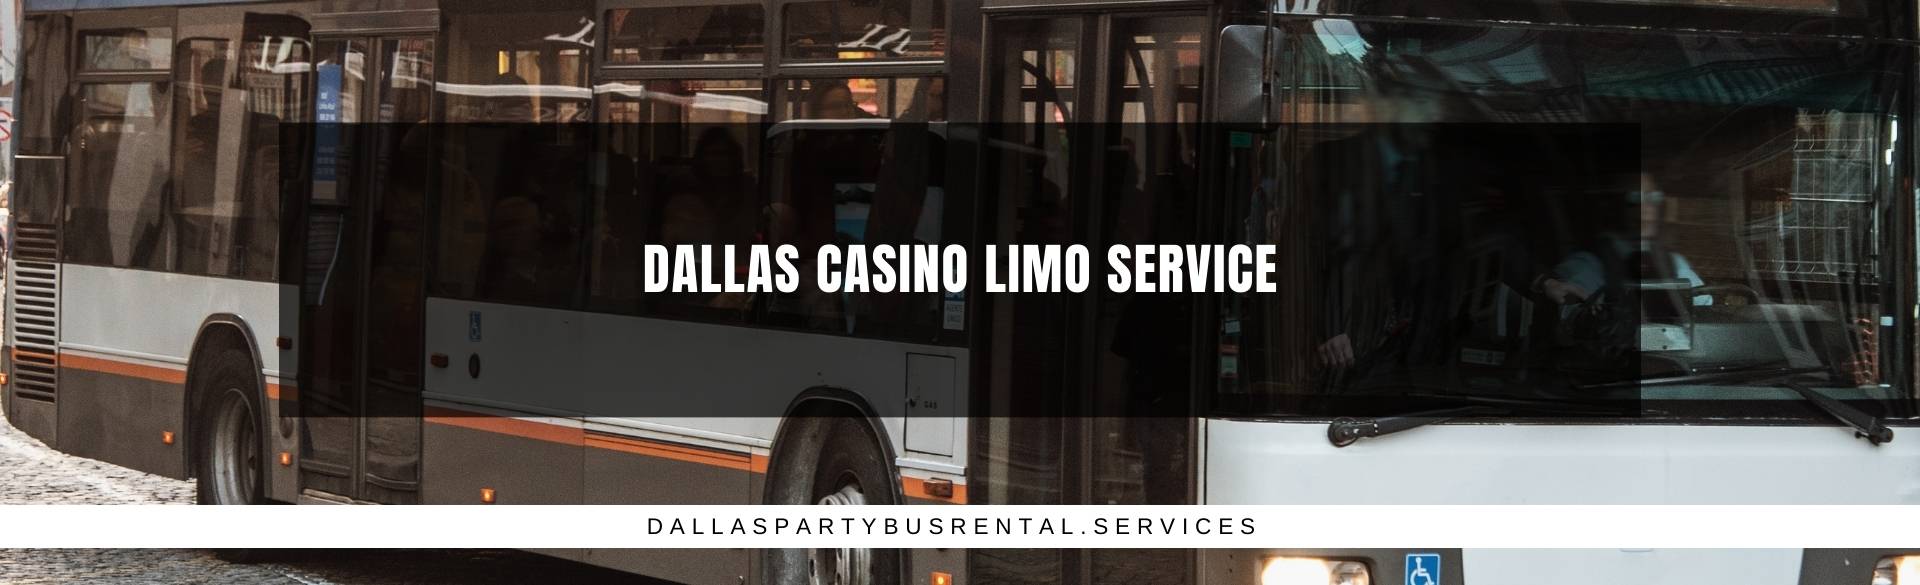 Dallas Casino Limo Service